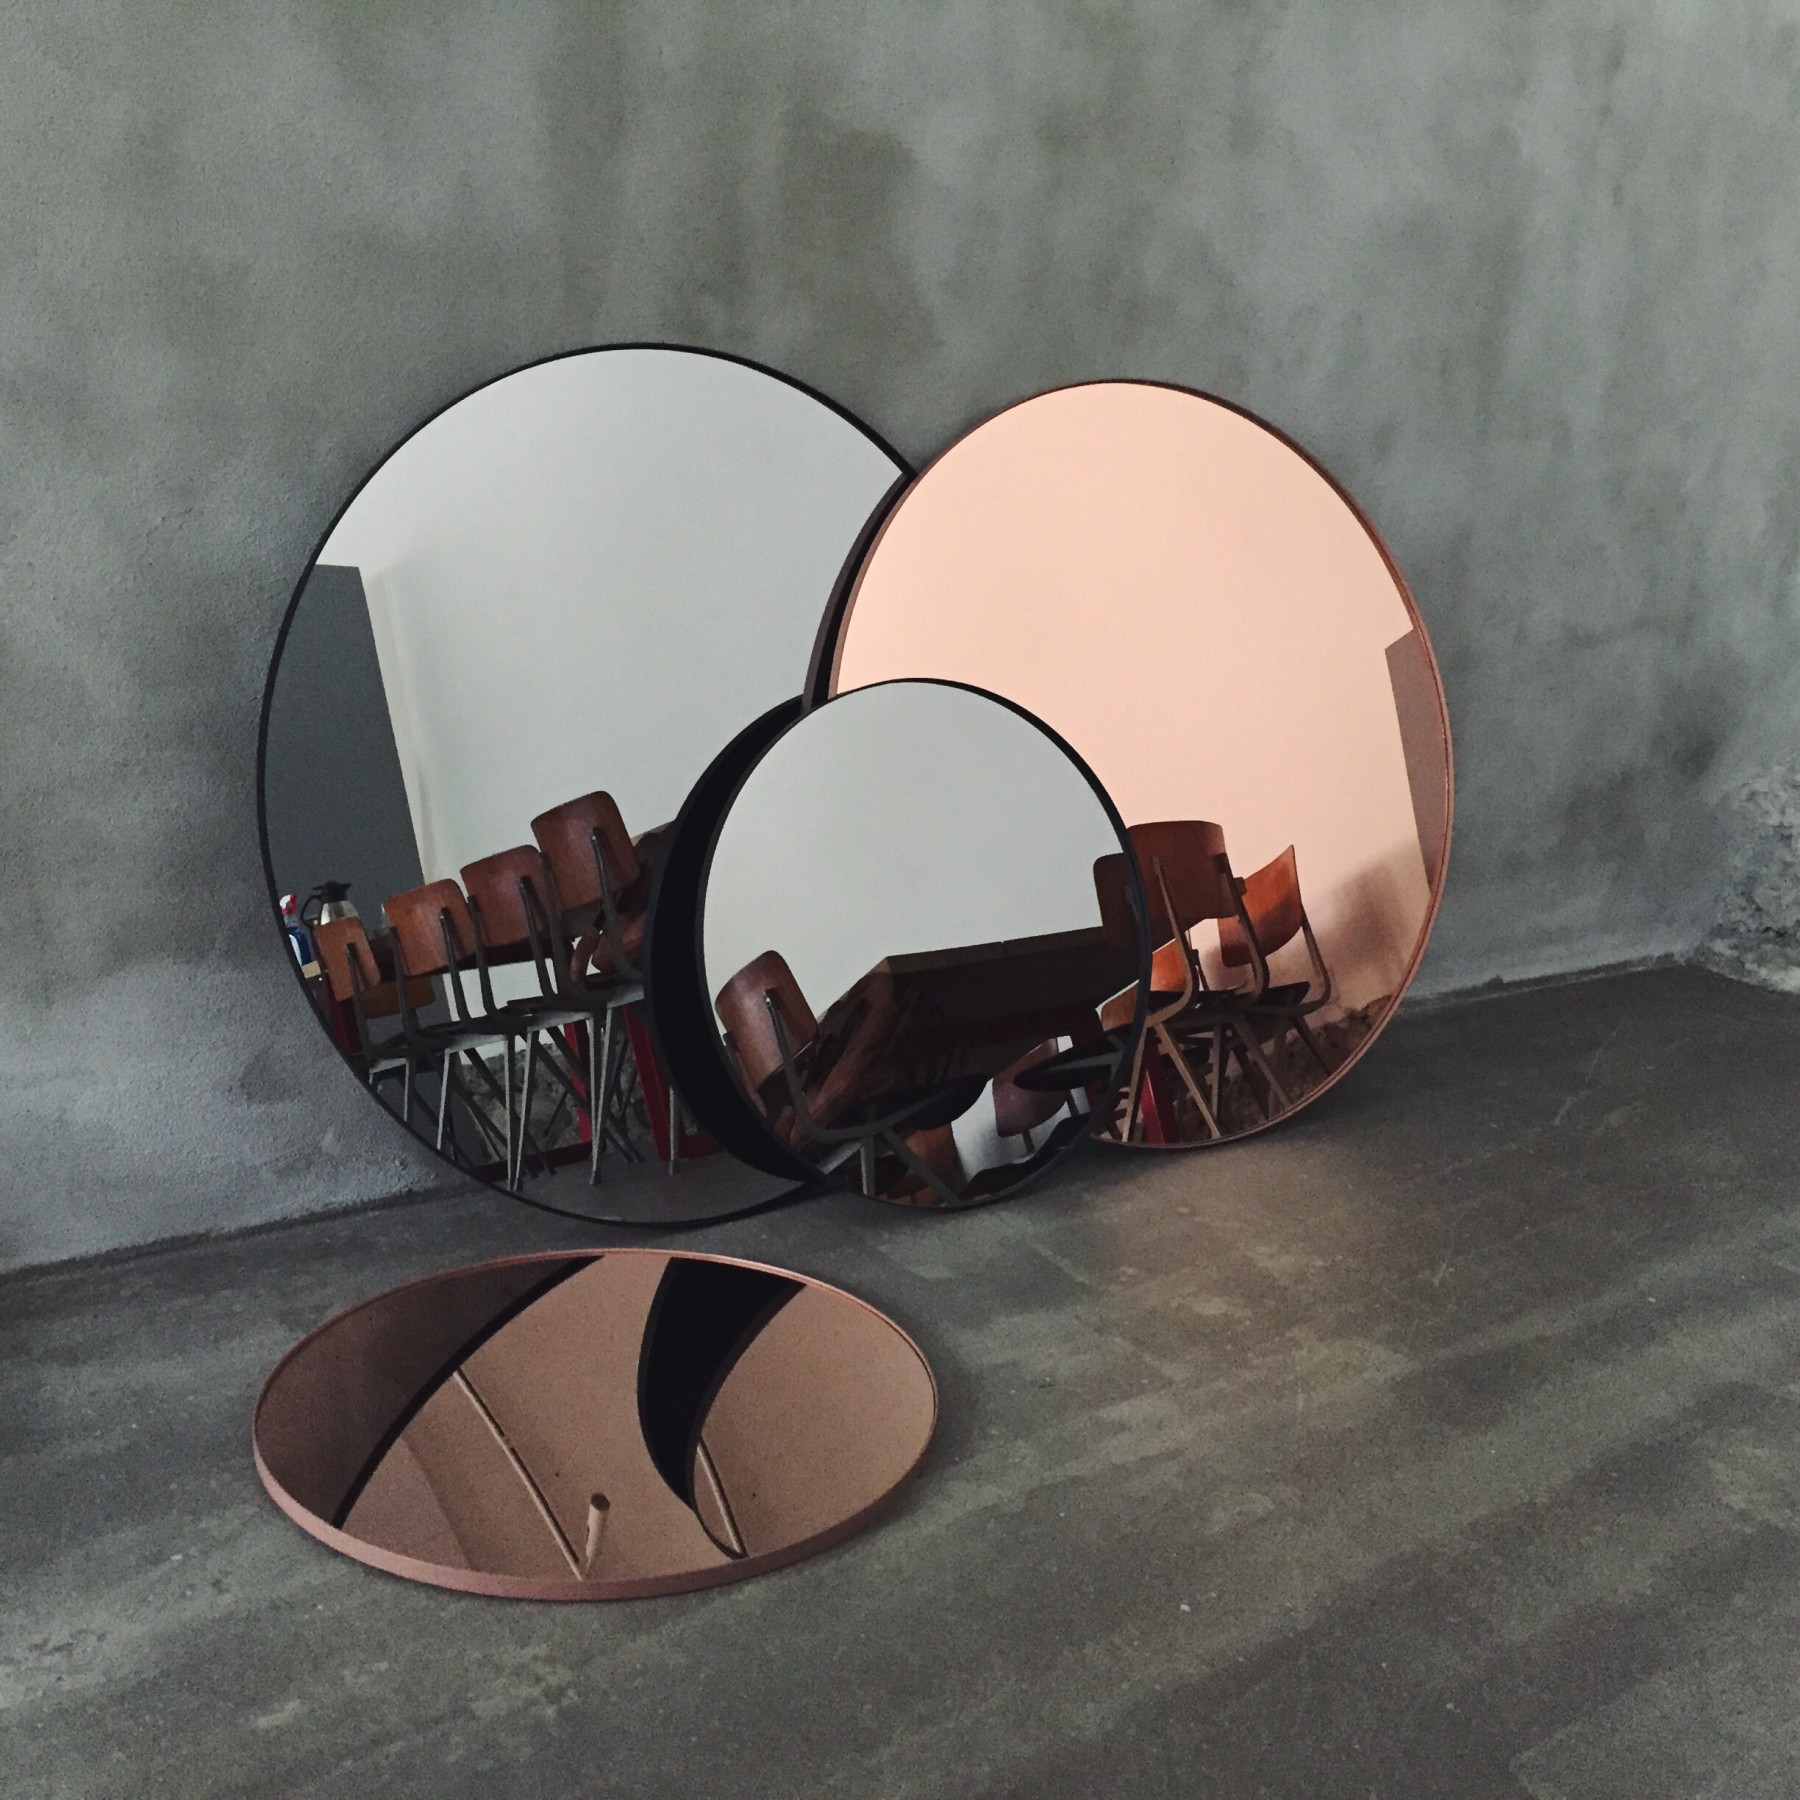 Circum mirrors from AYTM